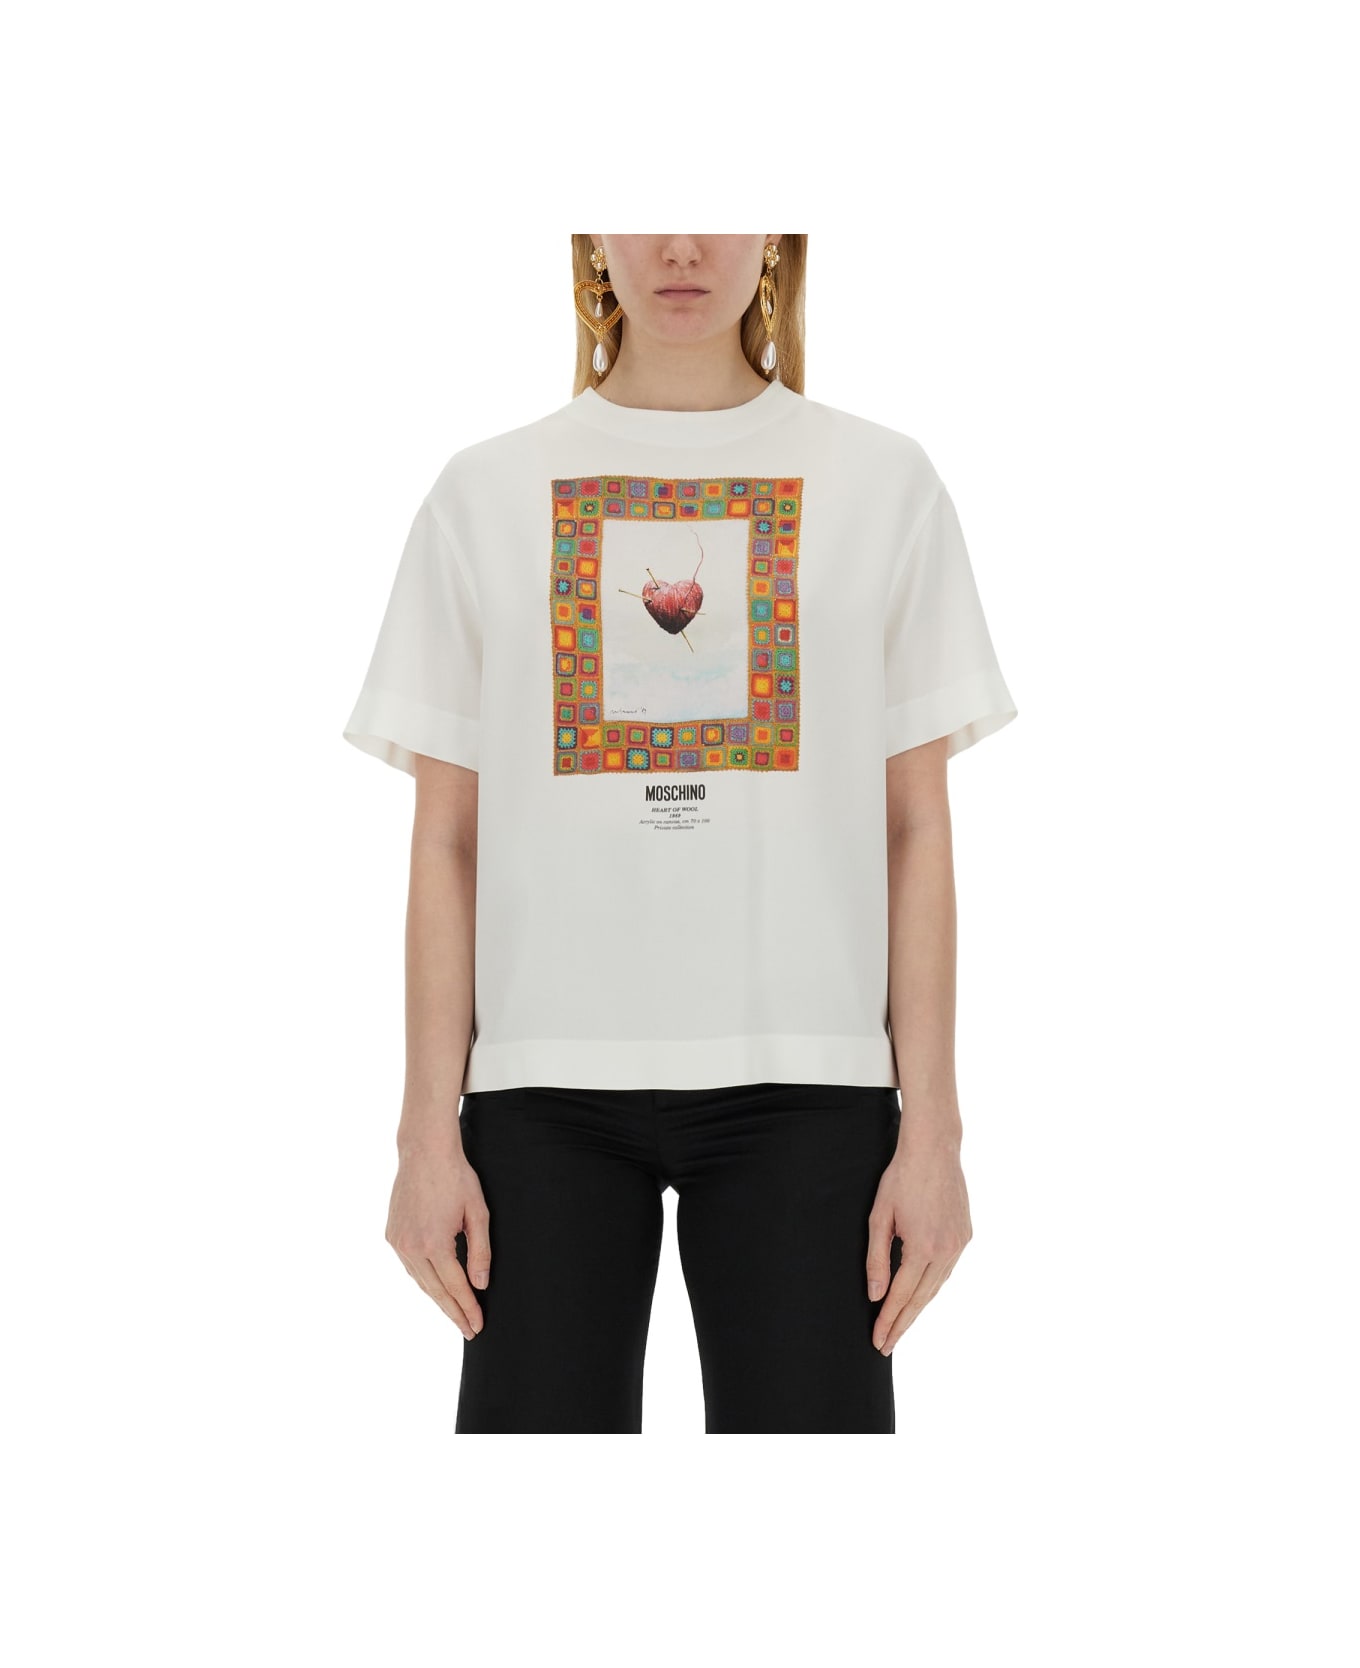 Moschino T-shirt "heart" - WHITE Tシャツ